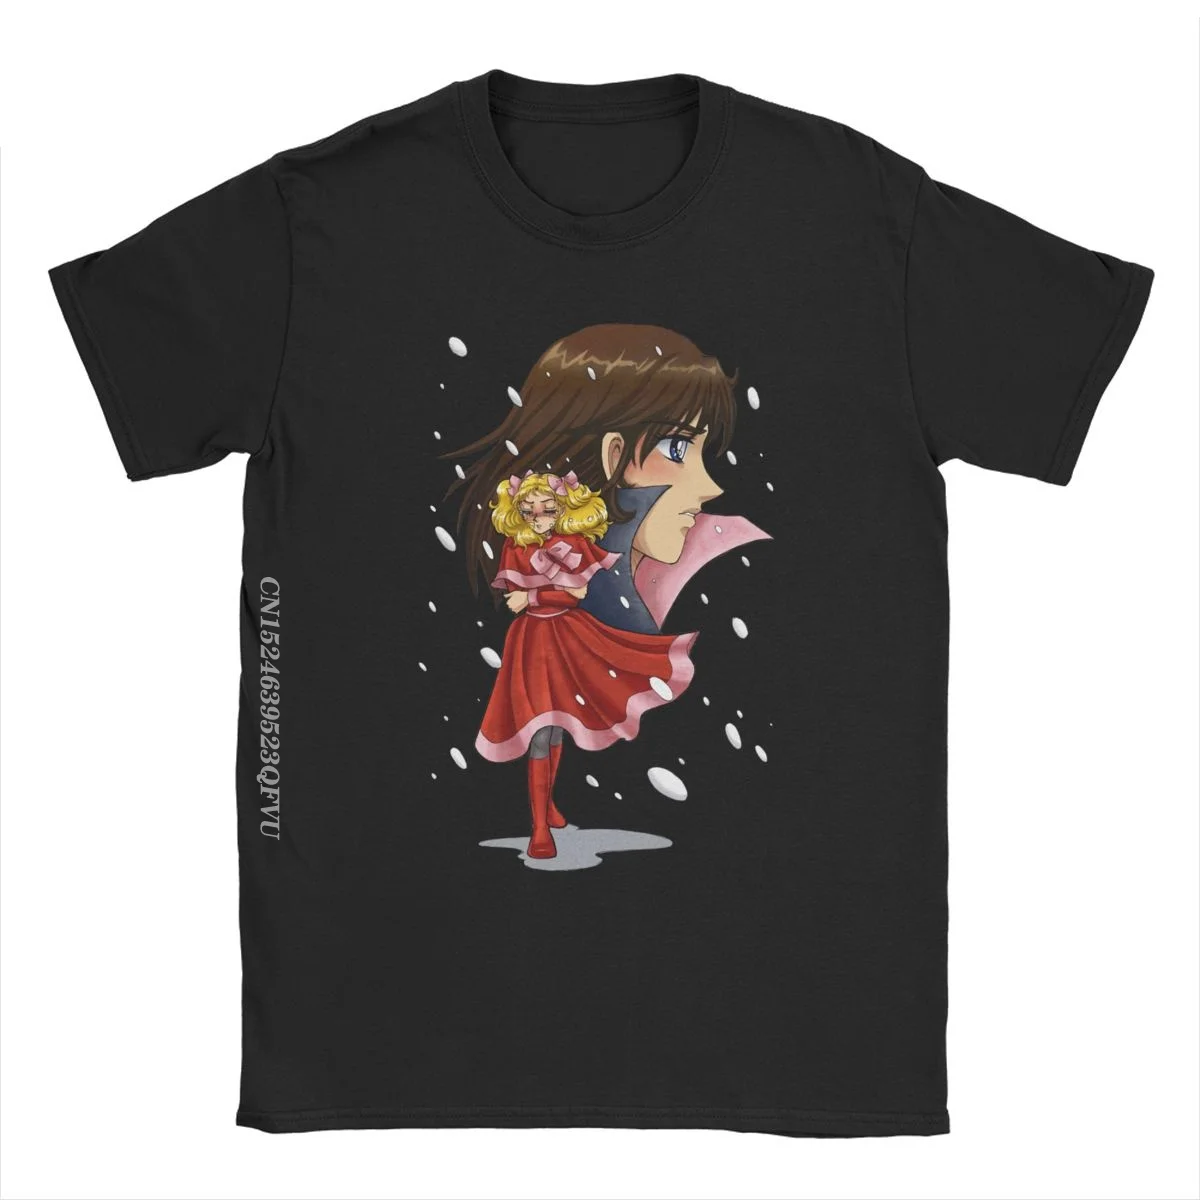 Männer frauen T Shirt Candy candy Terry Schnee Beiläufige Reine Baumwolle T-shirt Anime Kawaii Manga Tops T Shirts rundhals Tops